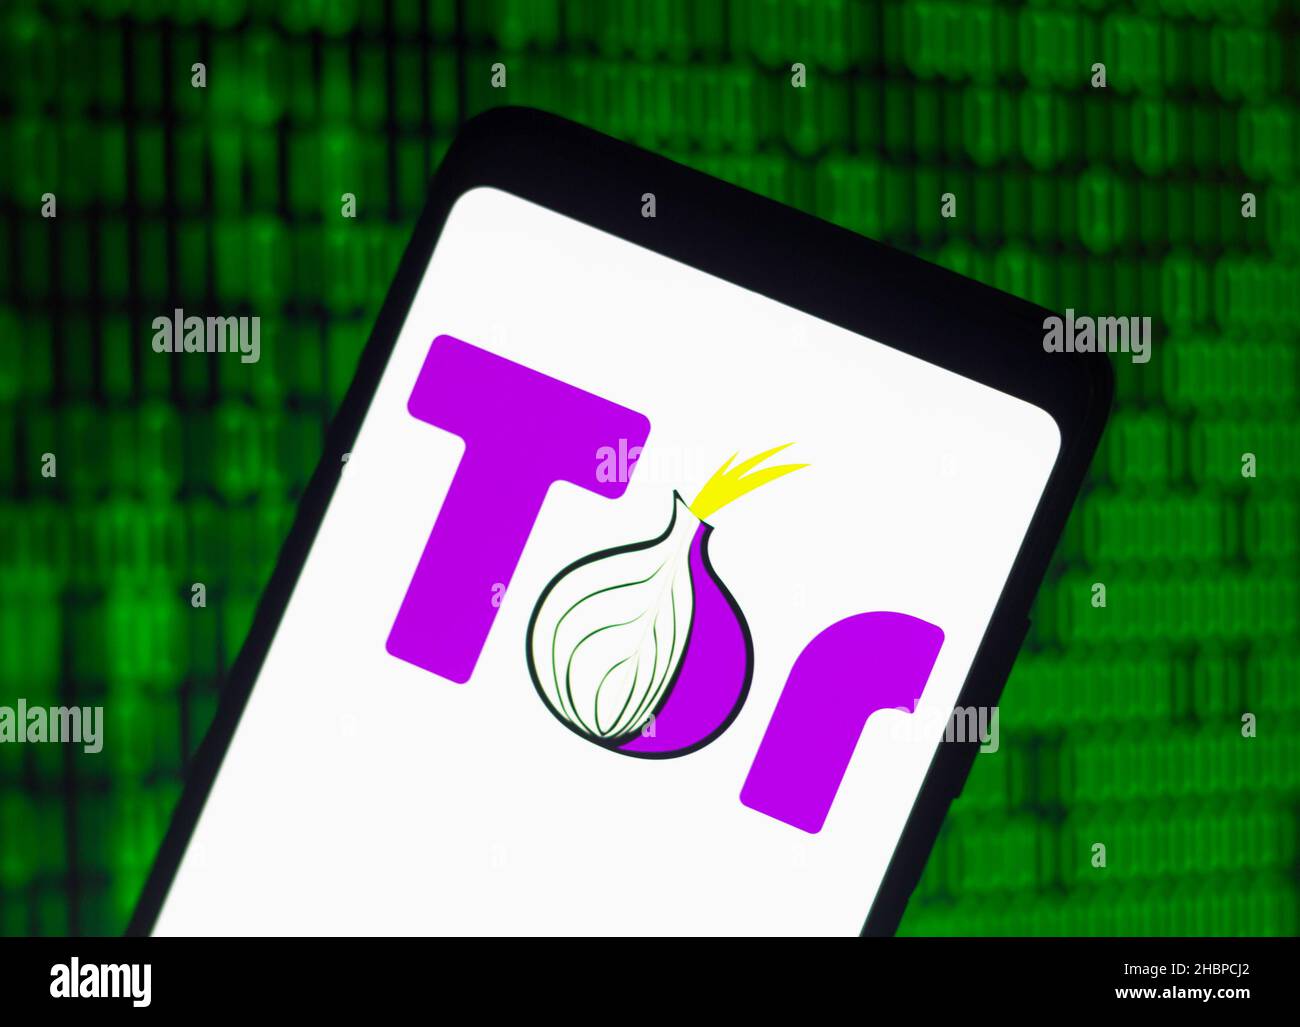 Tor browser фото mega вход что с тор браузером мега